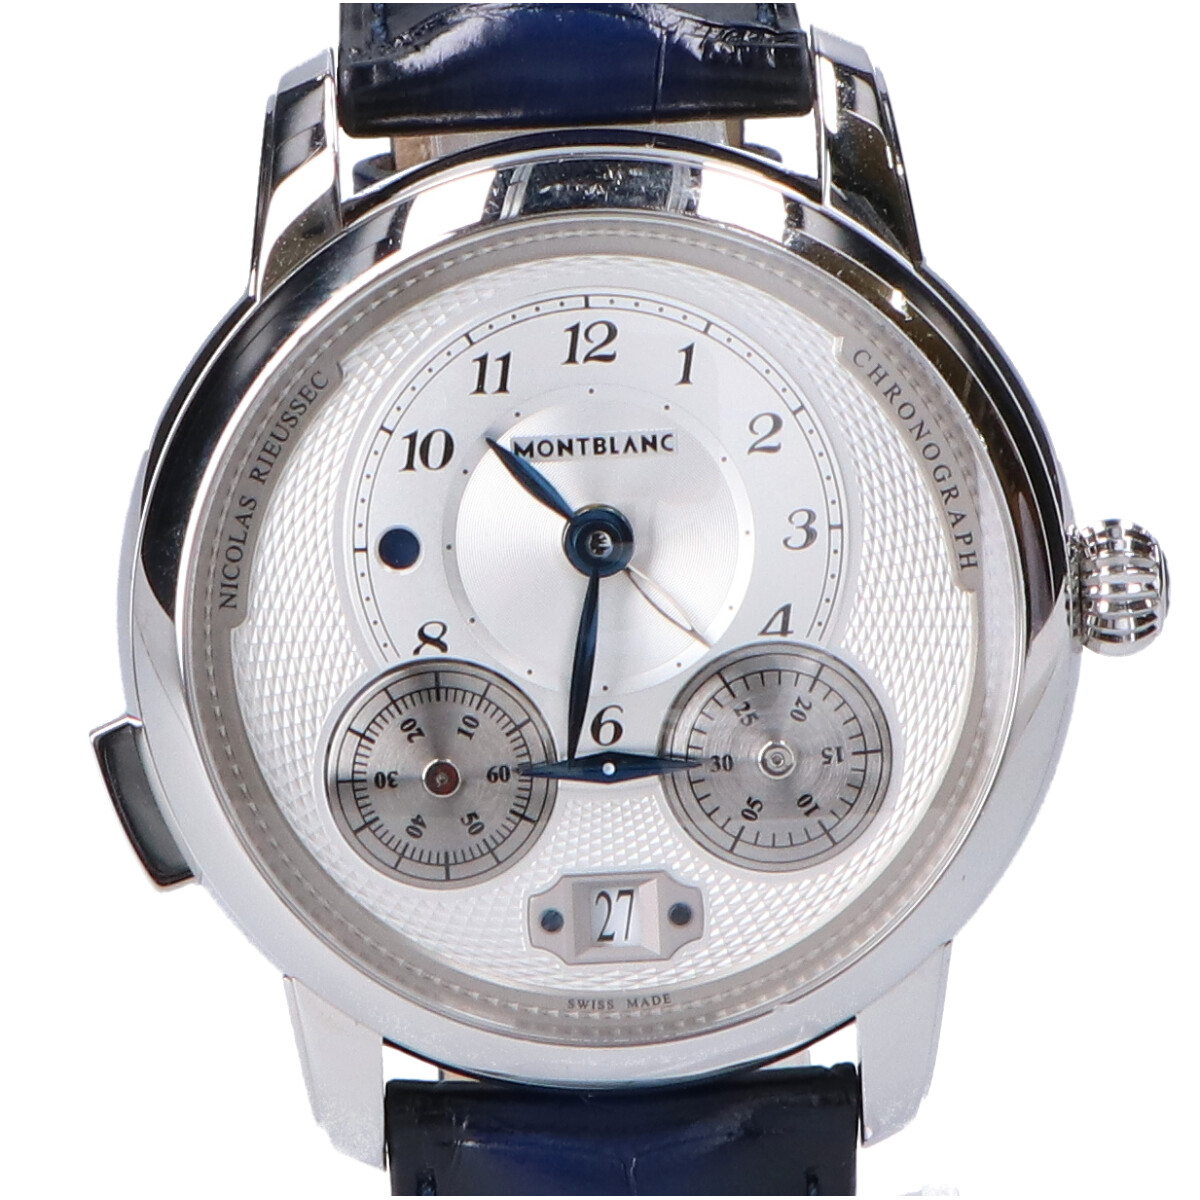 モンブランのCal.MB R200 スターレガシー ニコラ・リューセック クロノグラフ ストラップ 自動巻き腕時計の買取実績です。